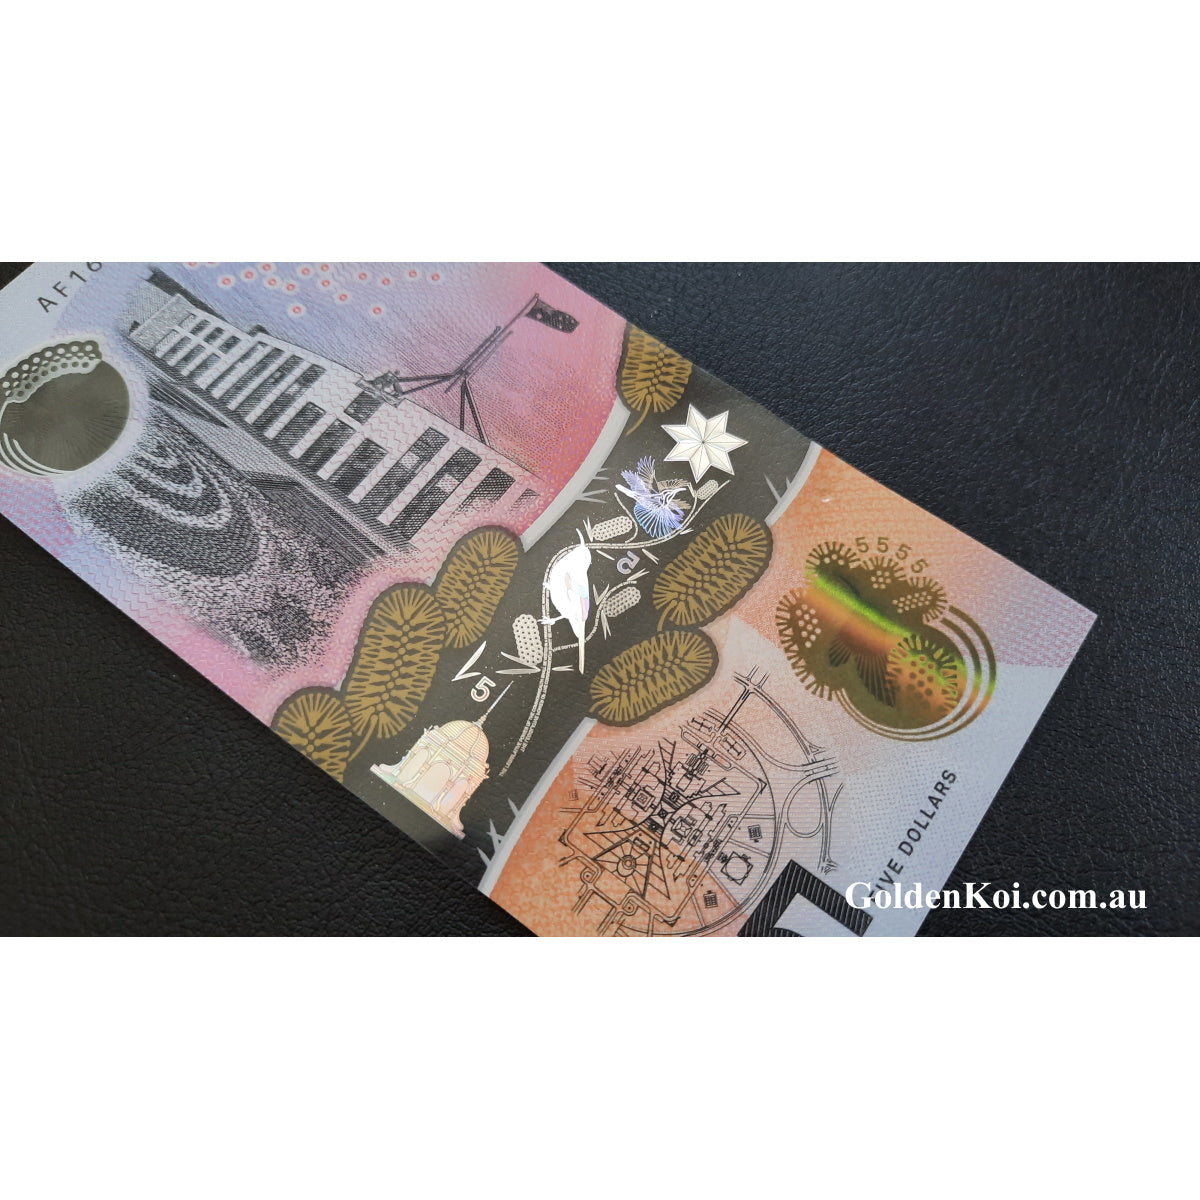 2016 $5 Stevens/Fraser Banknote